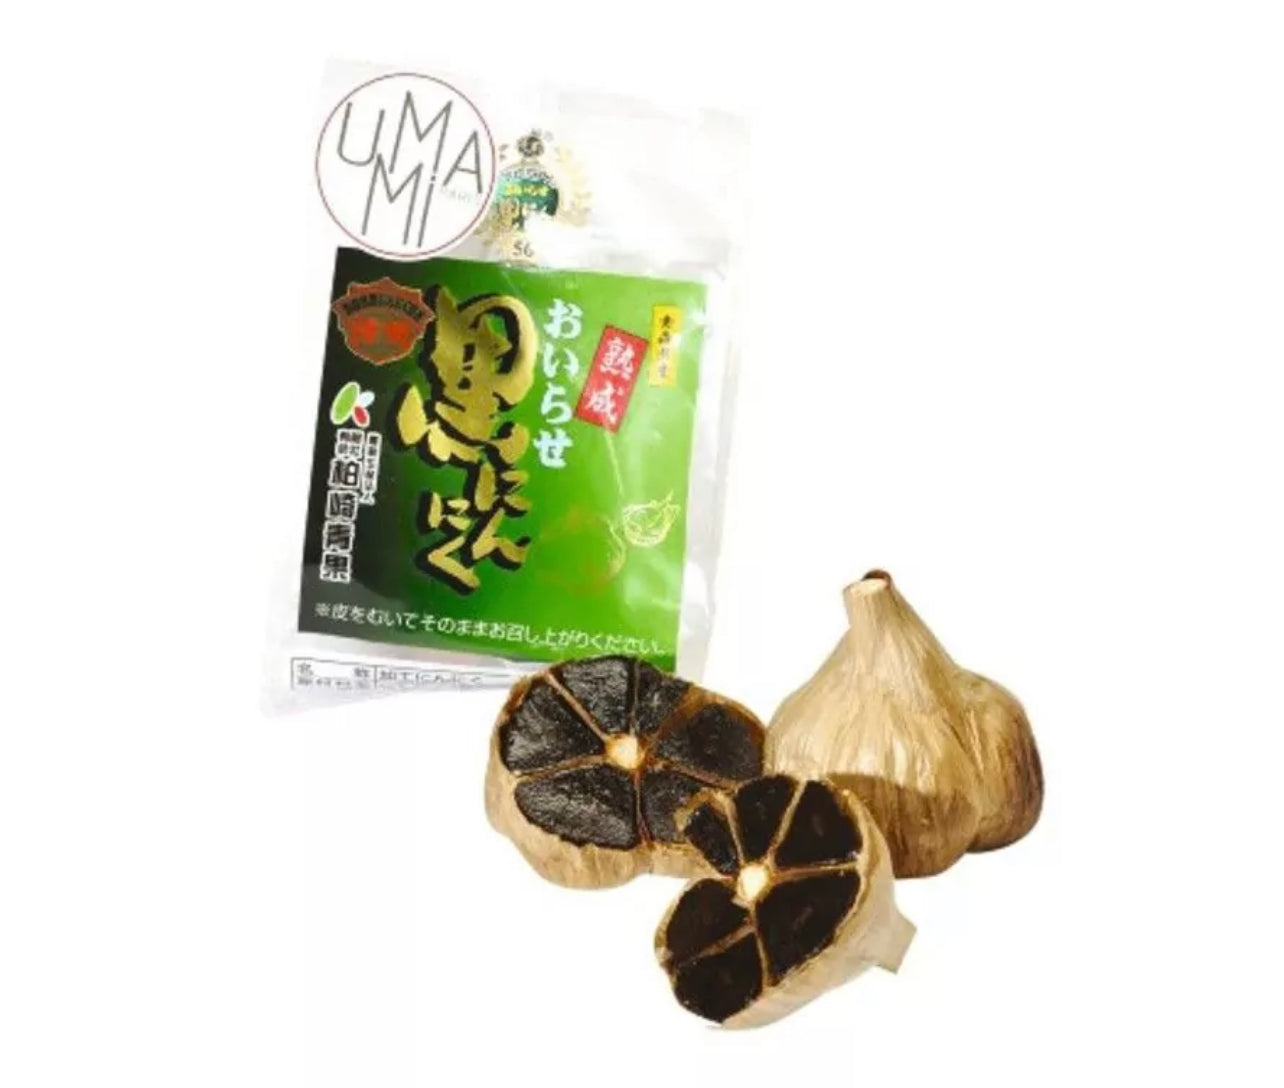 Aomori black garlic 1 head ±50g